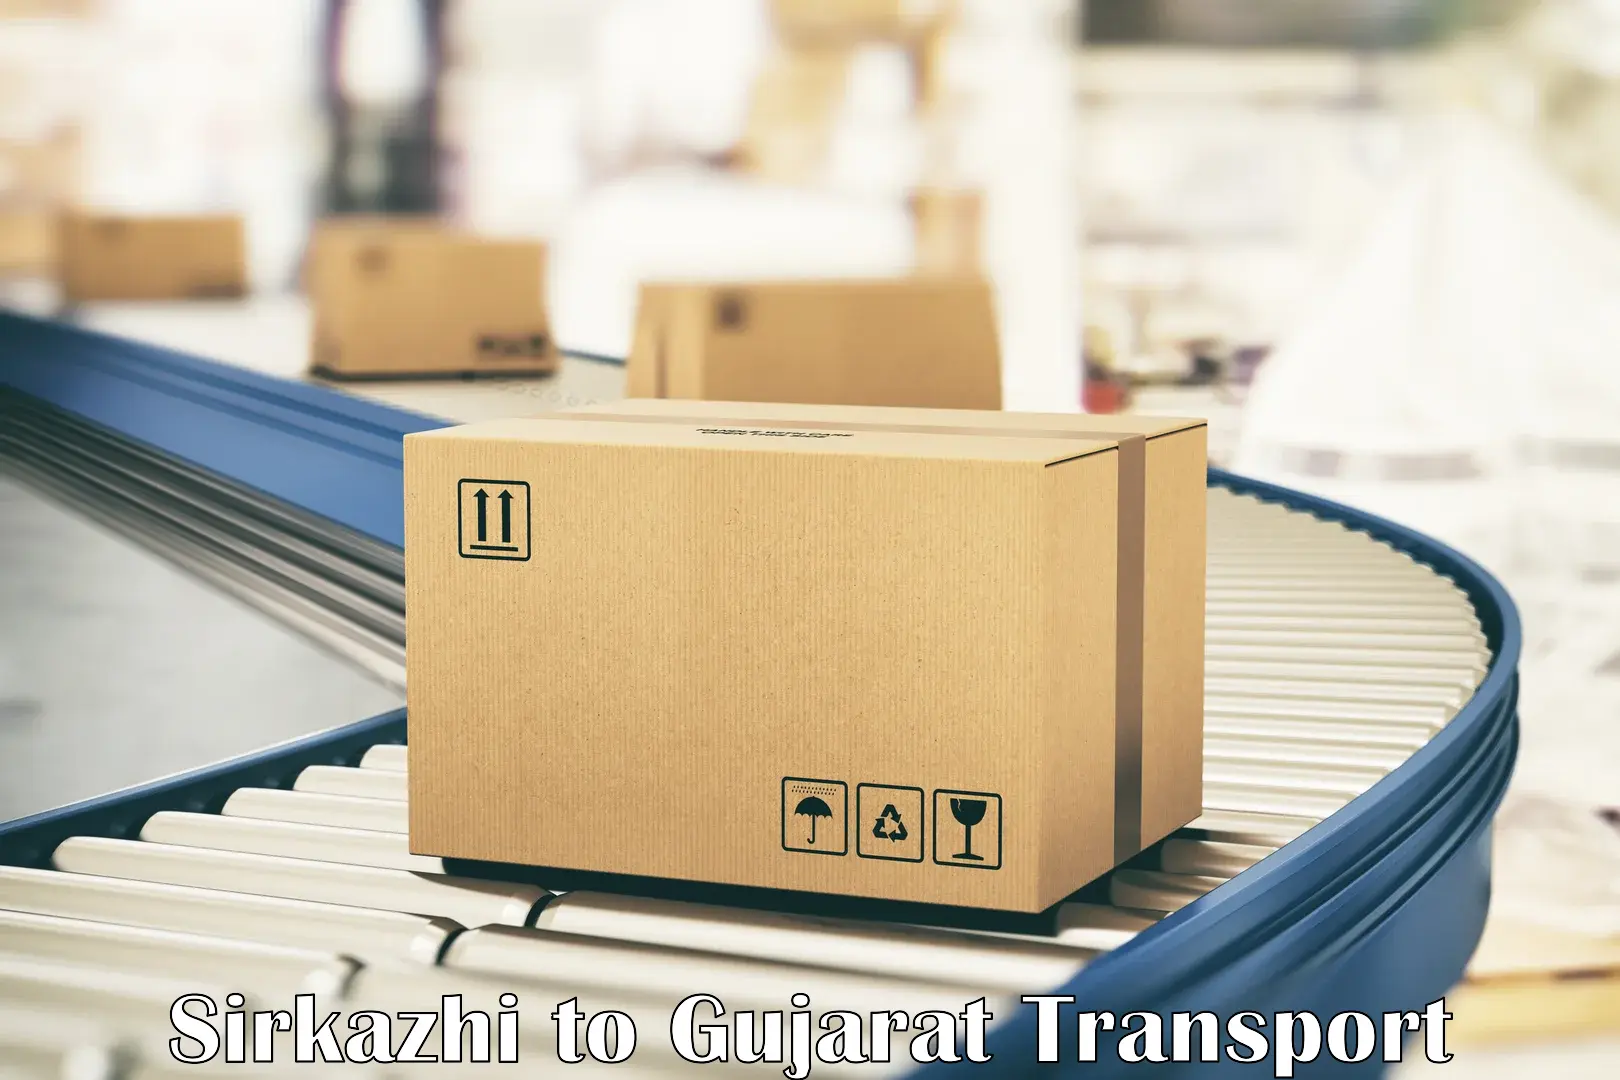 India truck logistics services Sirkazhi to Rajkot